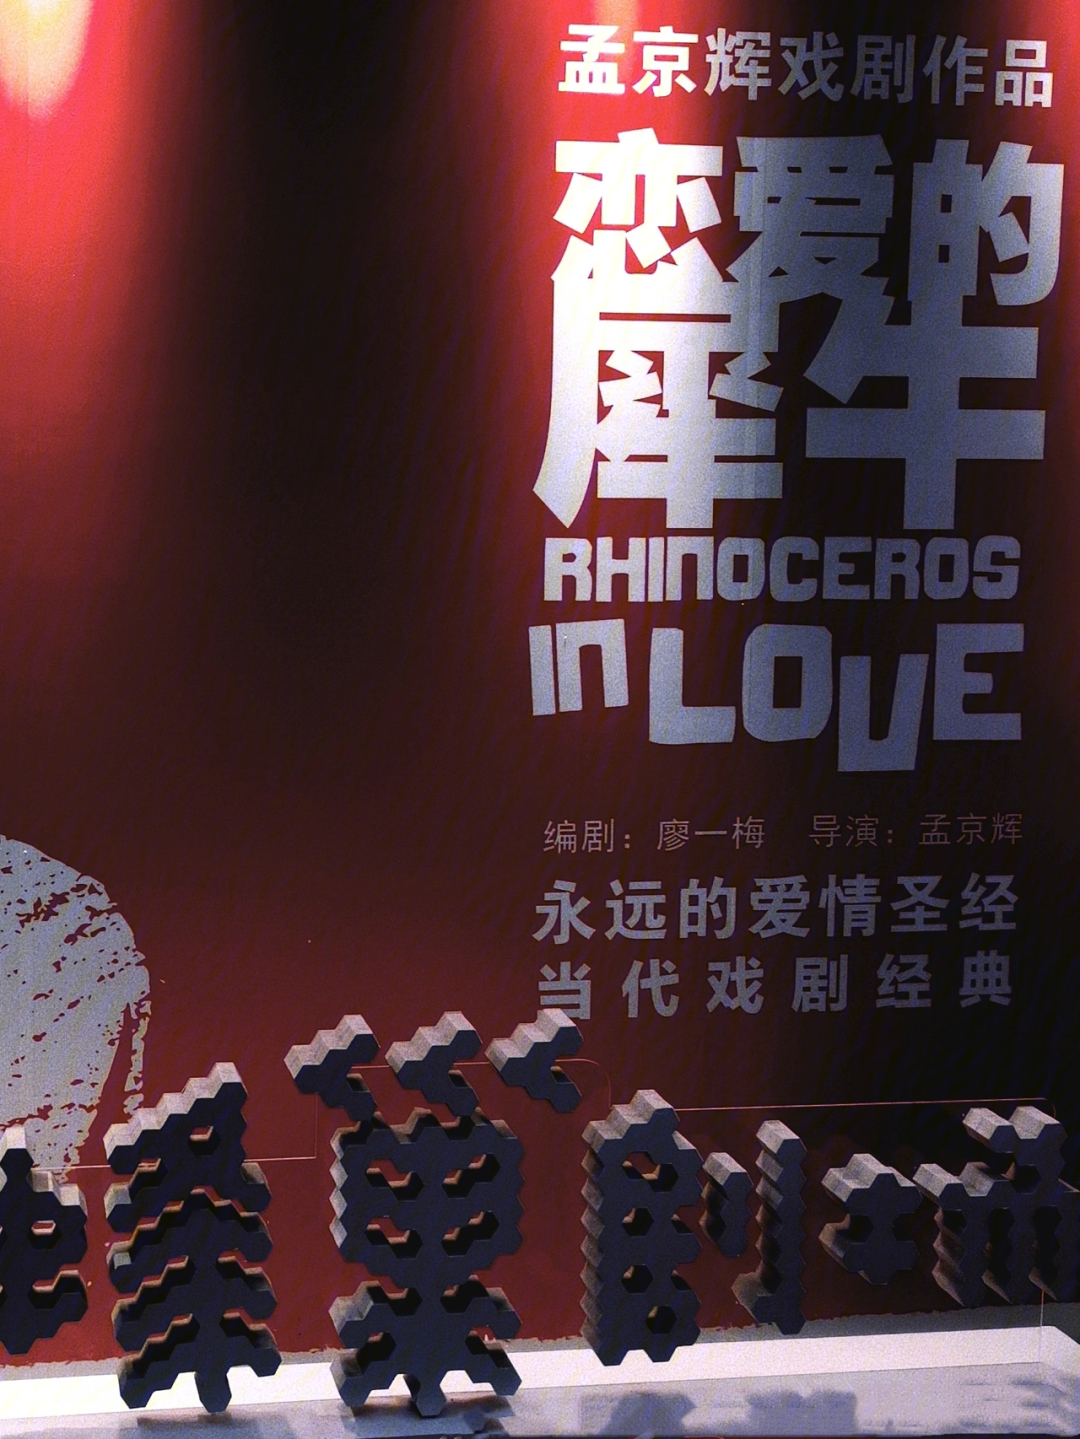 关于恋爱的犀牛07:《恋爱的犀牛》是由孟京辉执导,郭涛,吴越,李乃文